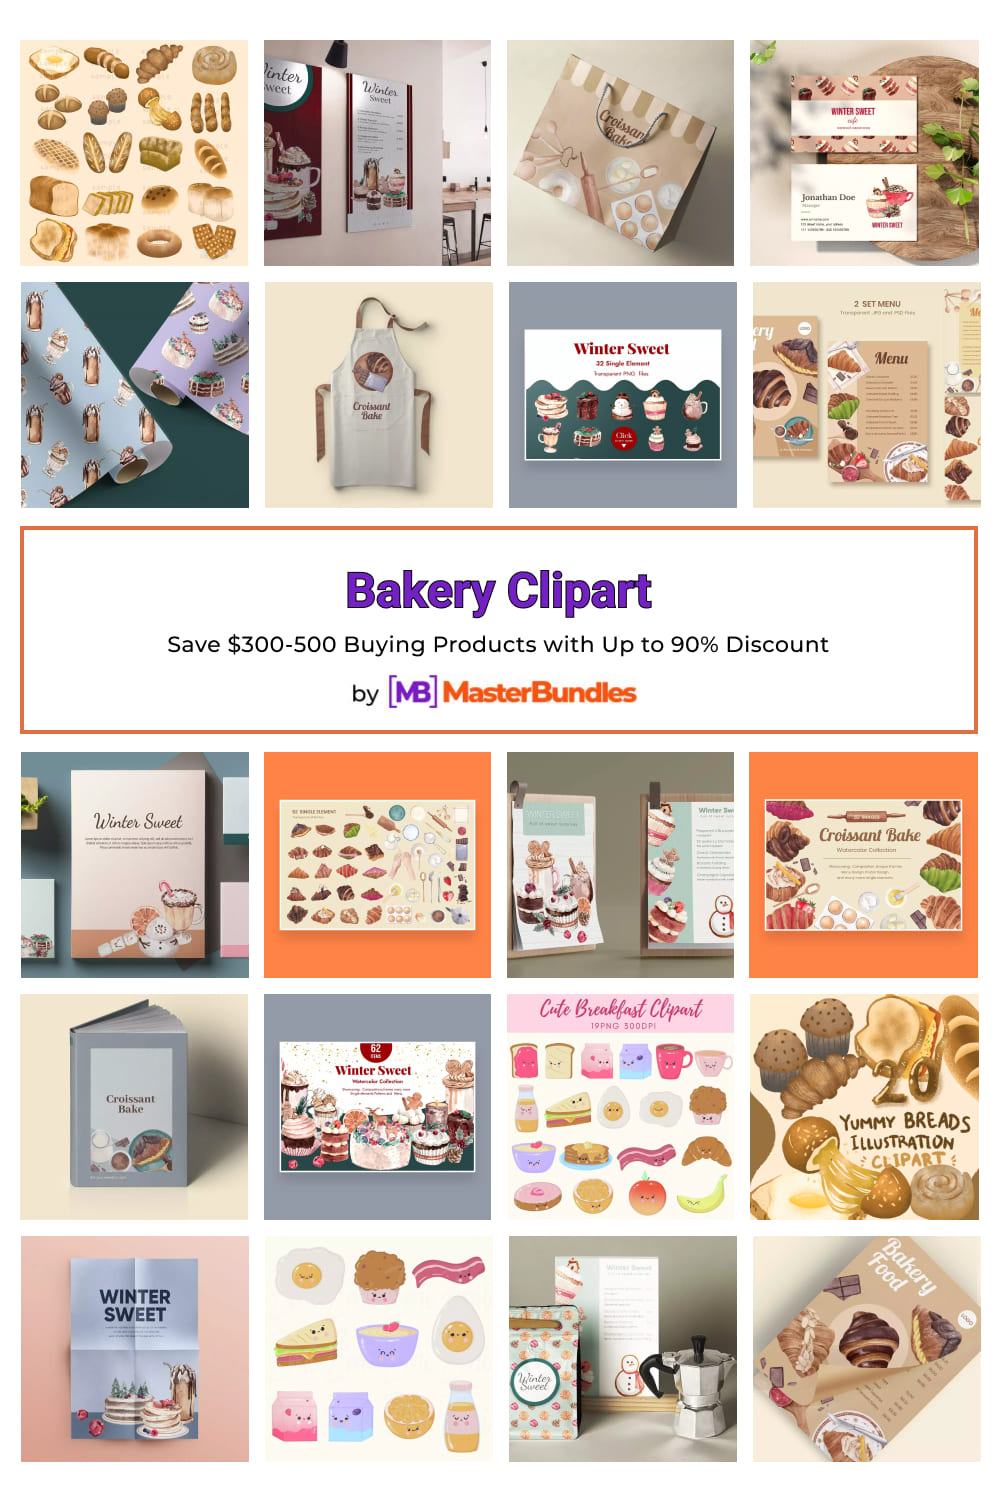 Bakery Clipart for Pinterest.